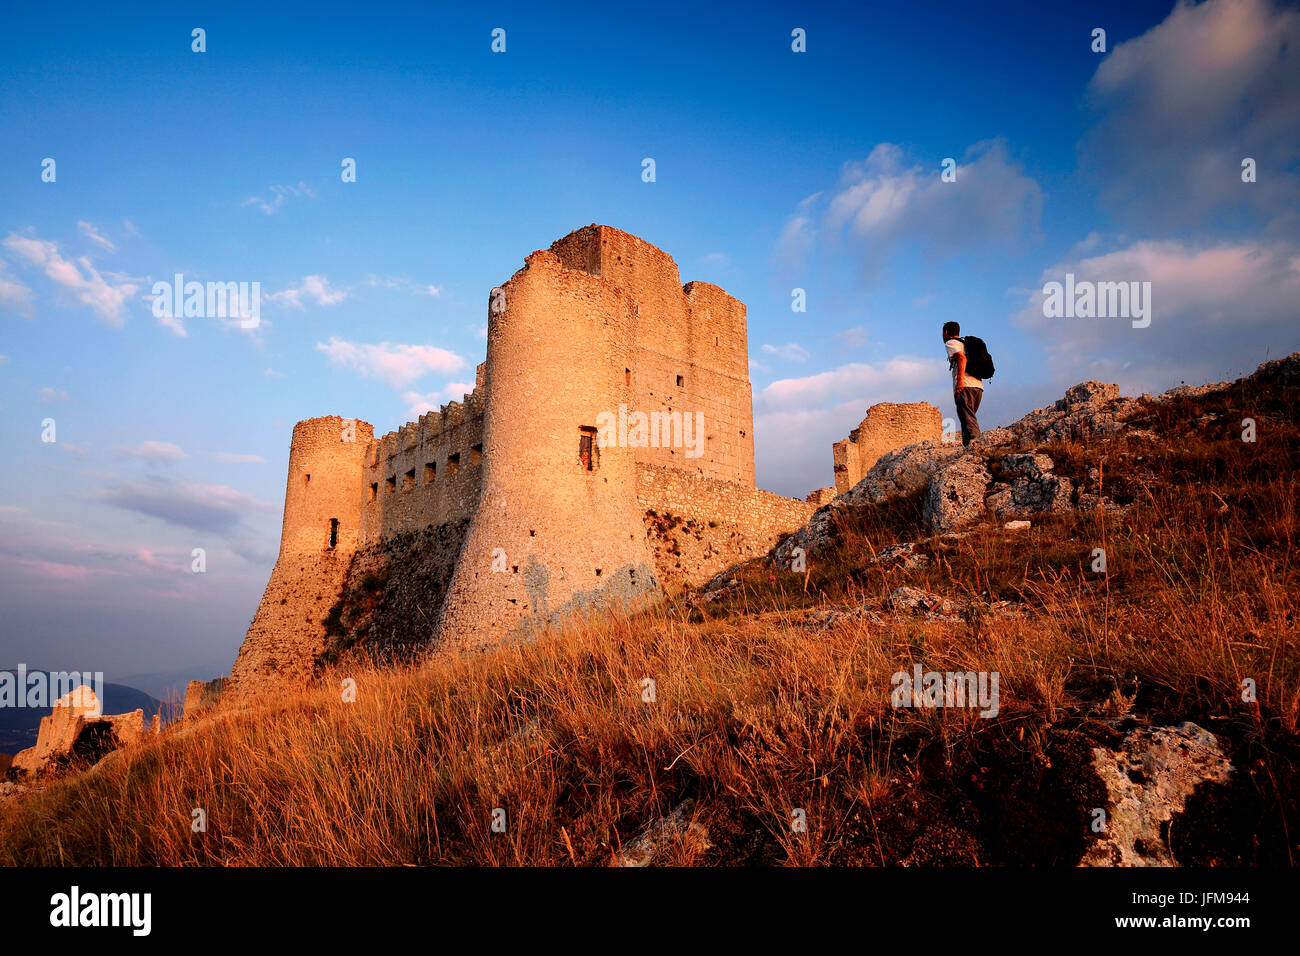 Ancien château médiéval de Rocca Calascio au coucher du soleil, l'Aquila, Abruzzo, Italie Banque D'Images